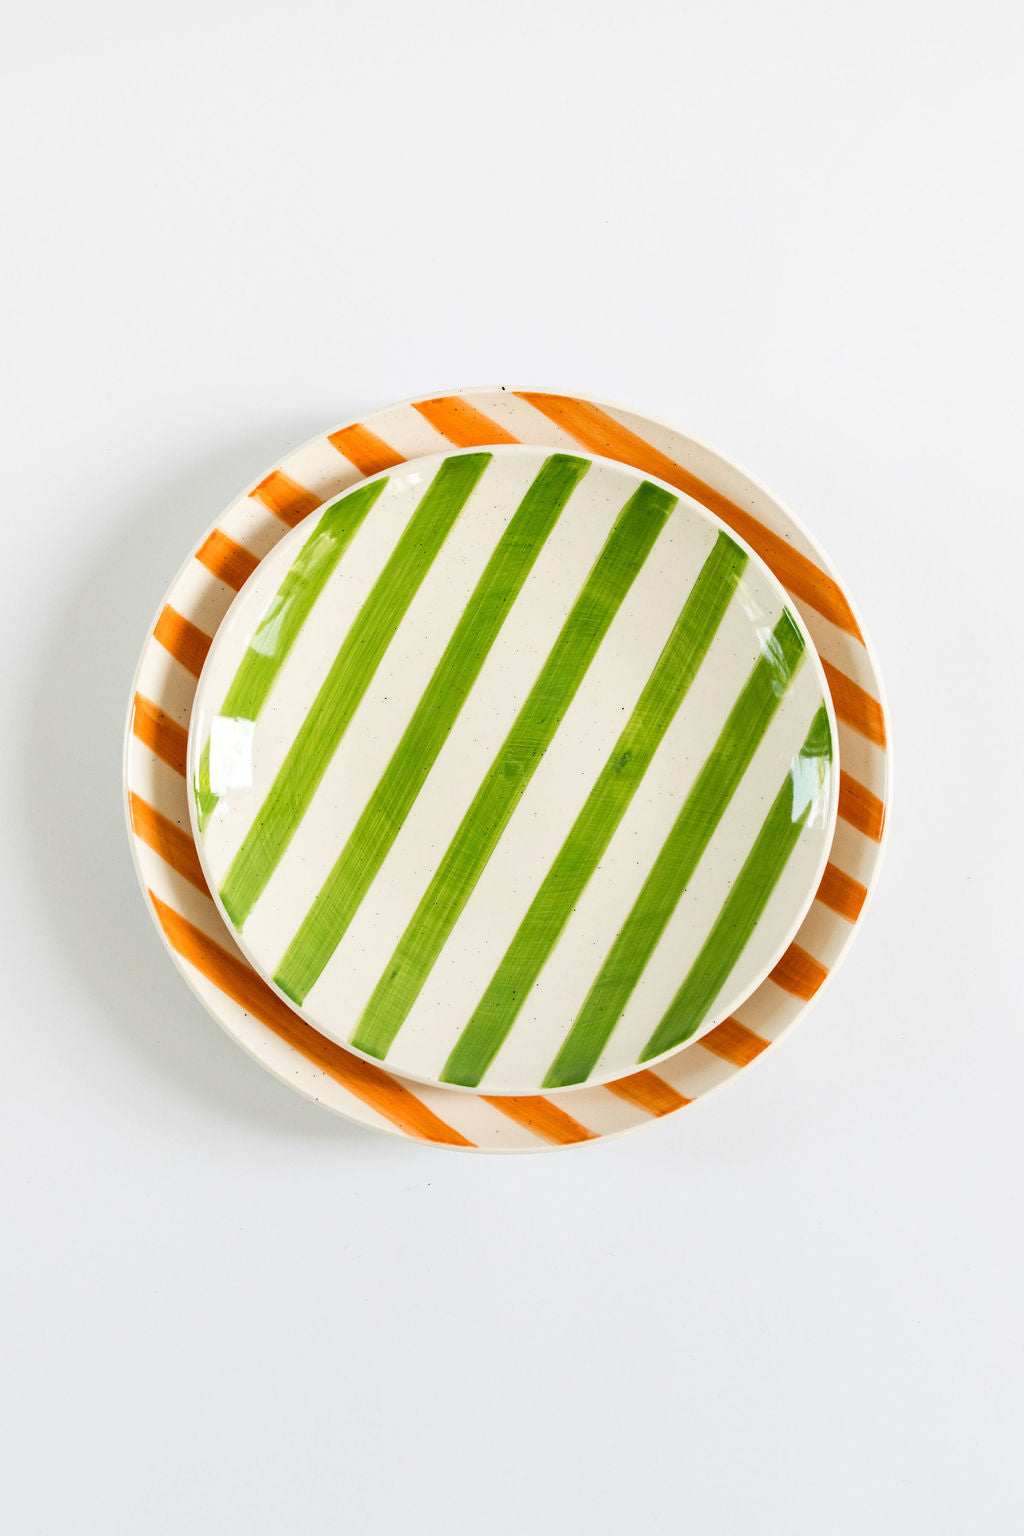 Handpainted Green Stripe Side Plate